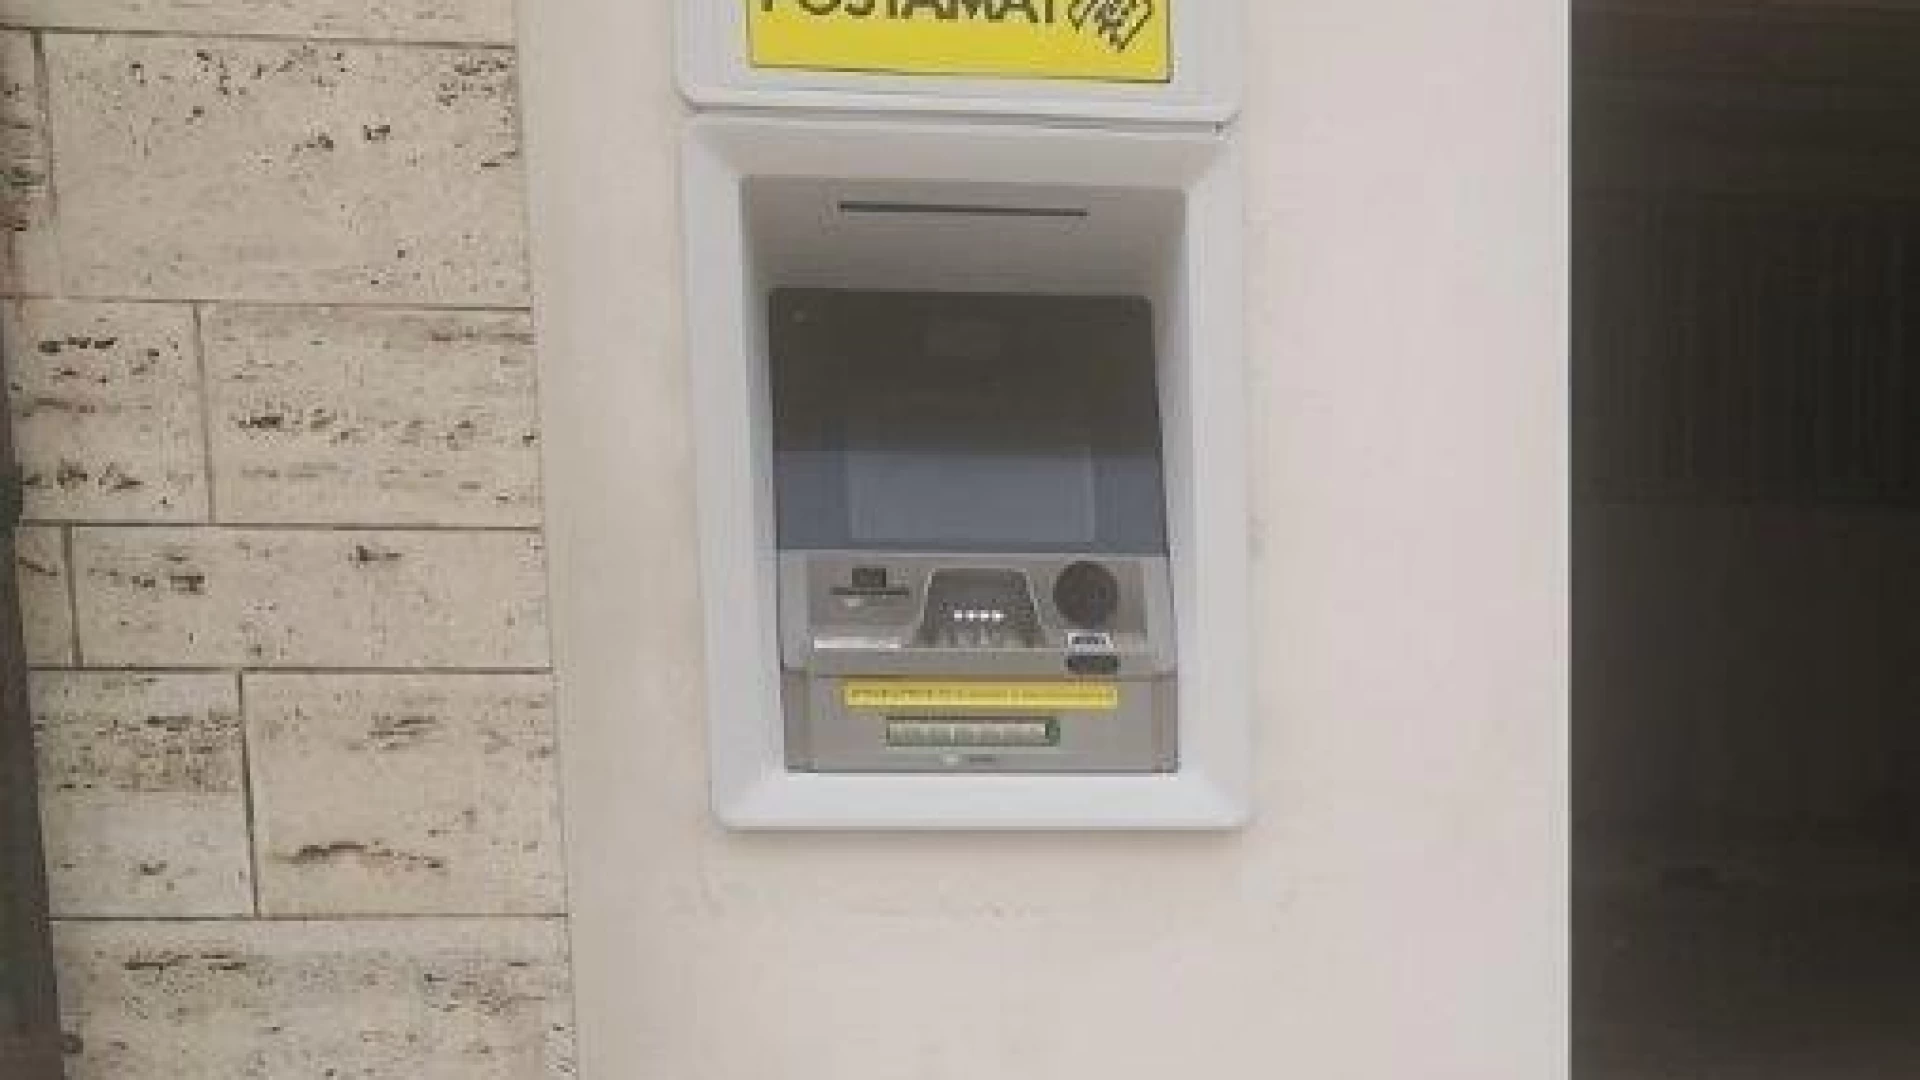 Poste Italiane: installato a Carovilli il primo Atm Postamat nell’ufficio postale.